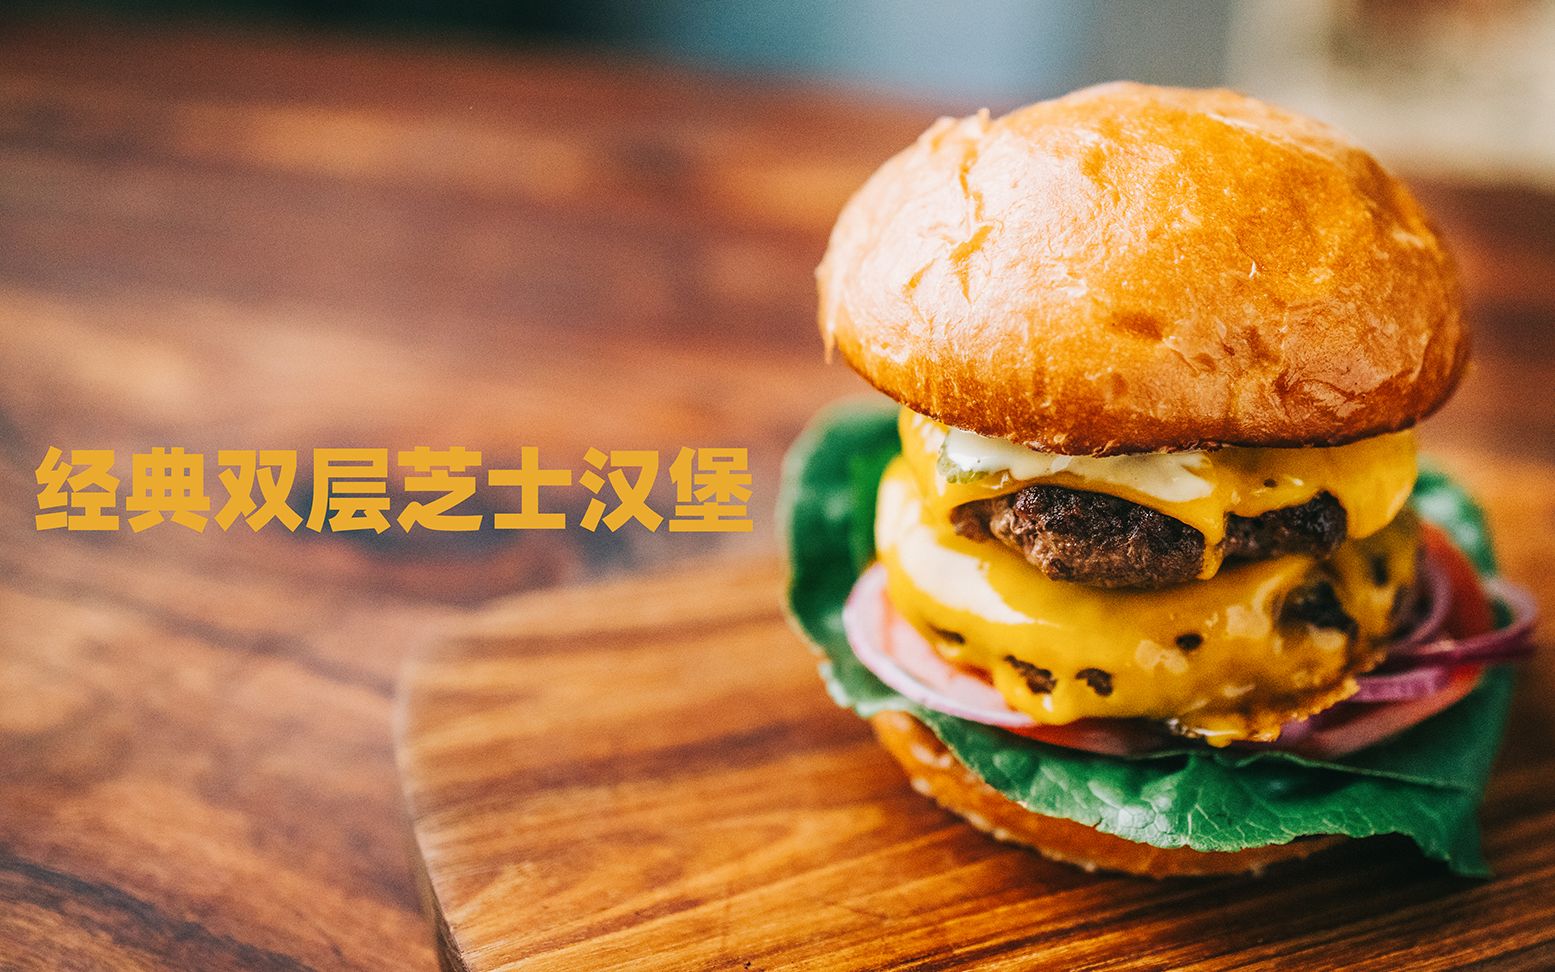 10分钟快手菜 - 经典双层芝士汉堡 | Classic Double Cheeseburger Recipe - 4K